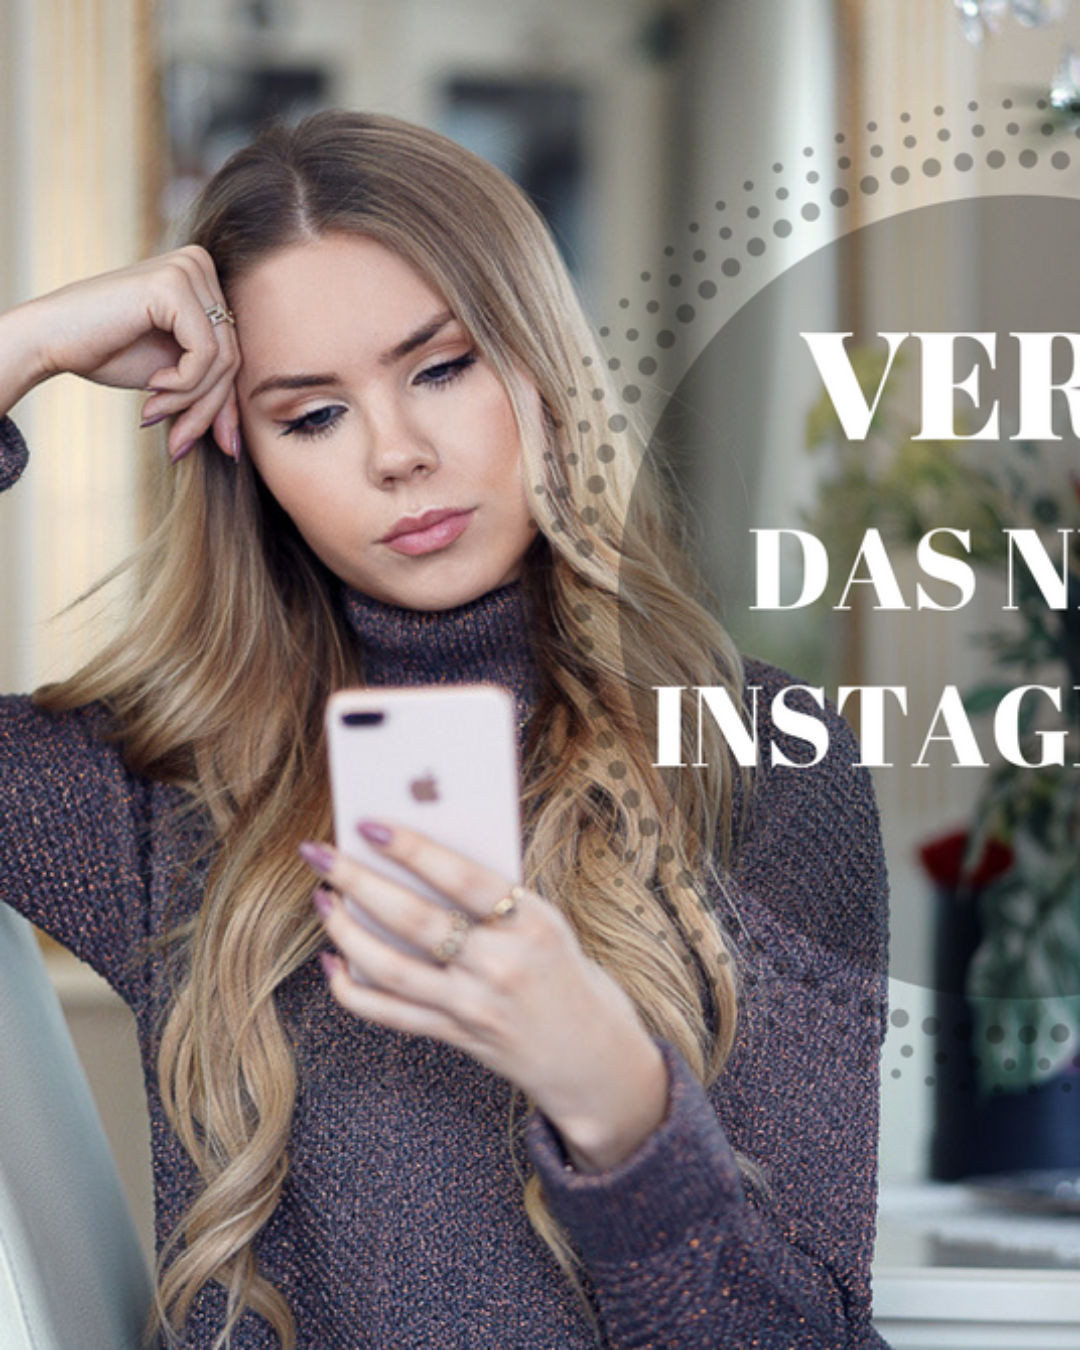 Vero das neue Instagram? Was du über die App wissen musst!